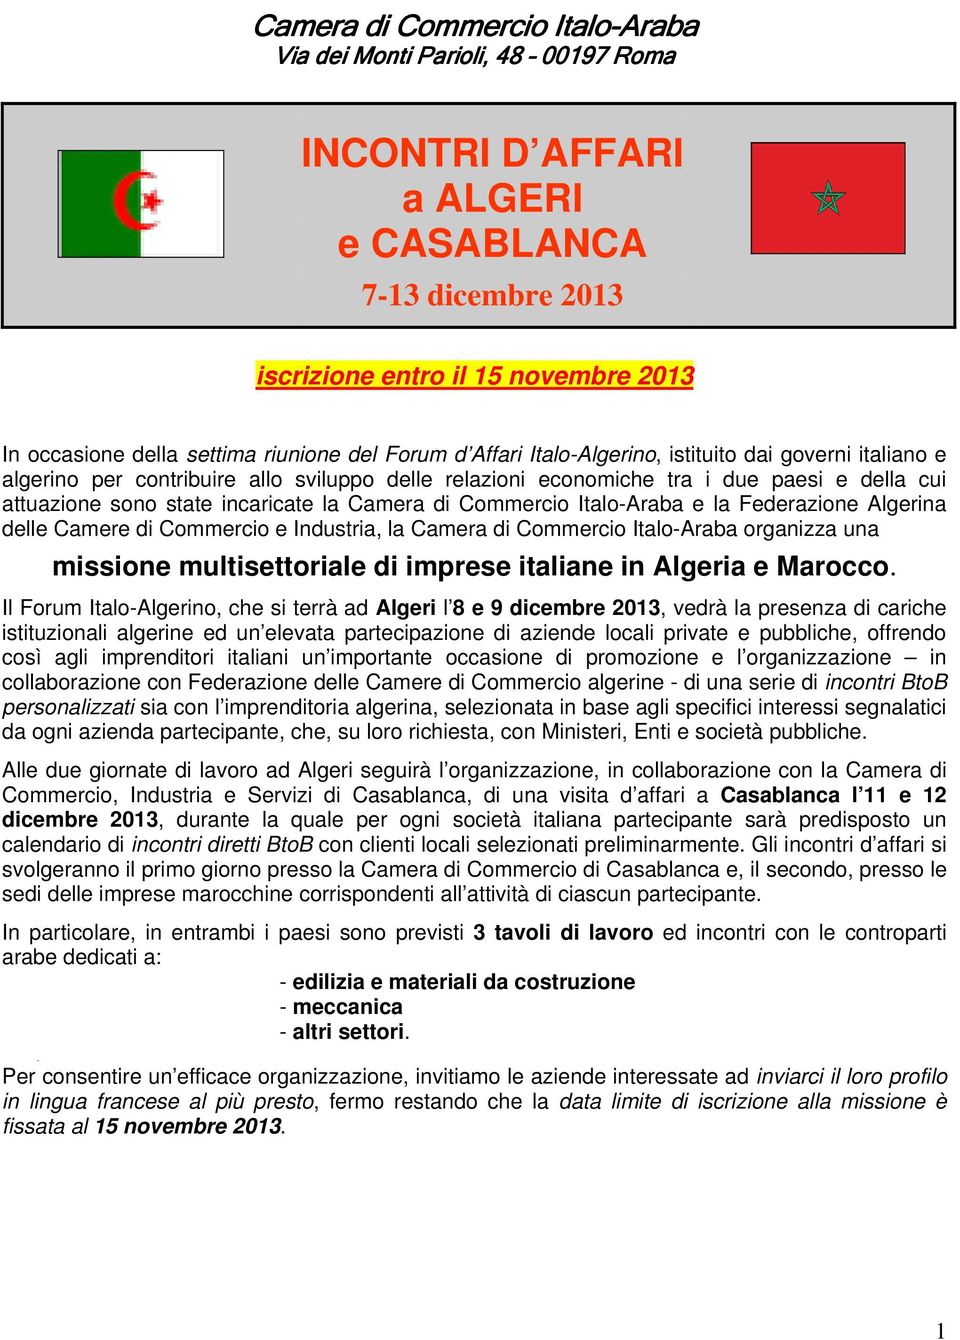 Camera di Commercio ItaloAraba e la Federazione Algerina delle Camere di Commercio e Industria, la Camera di Commercio ItaloAraba organizza una missione multisettoriale di imprese italiane in Algeria